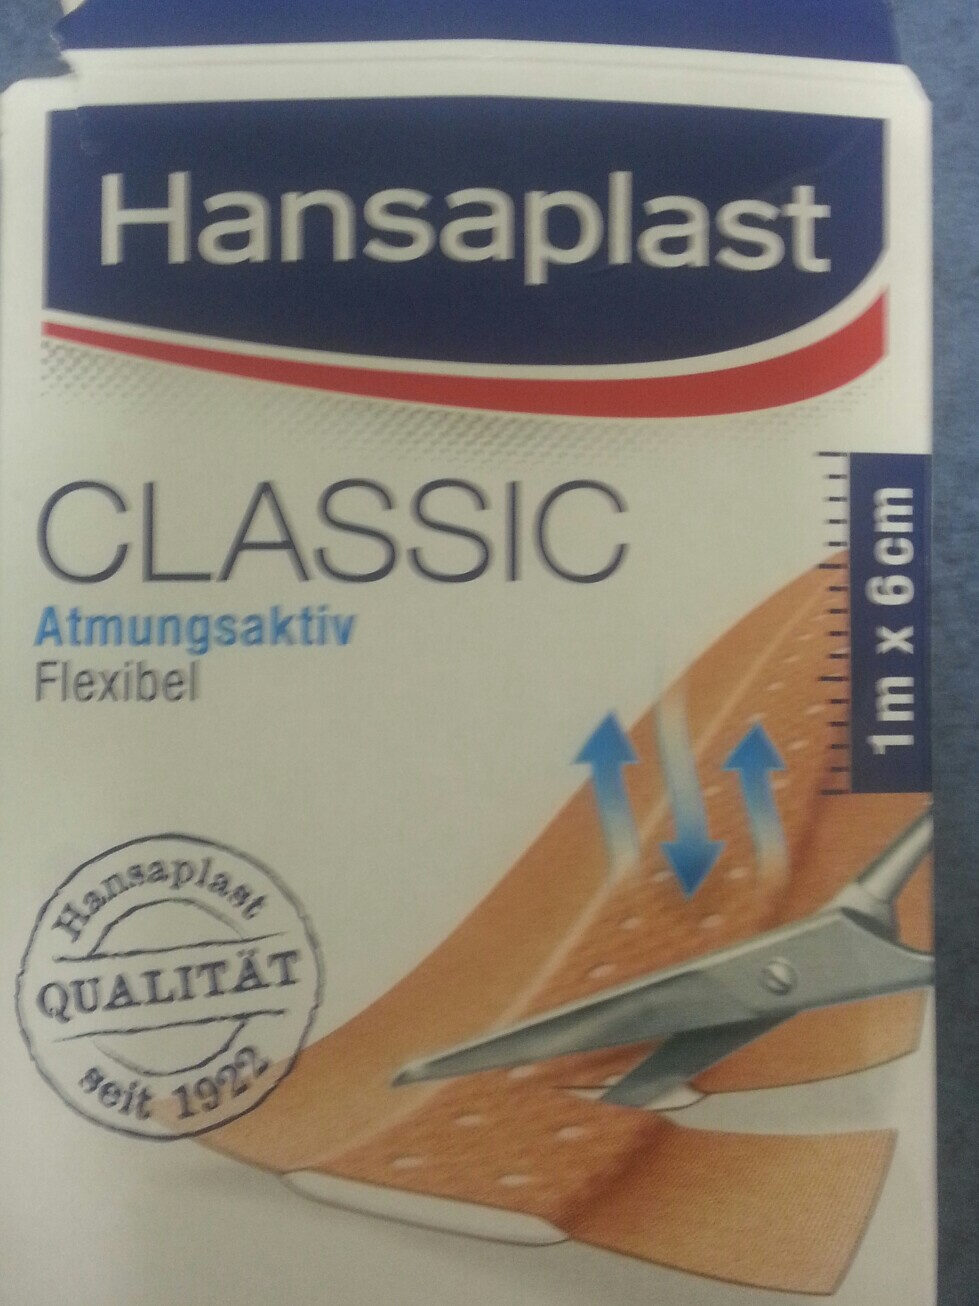 Hansaplast Classic - Product - de